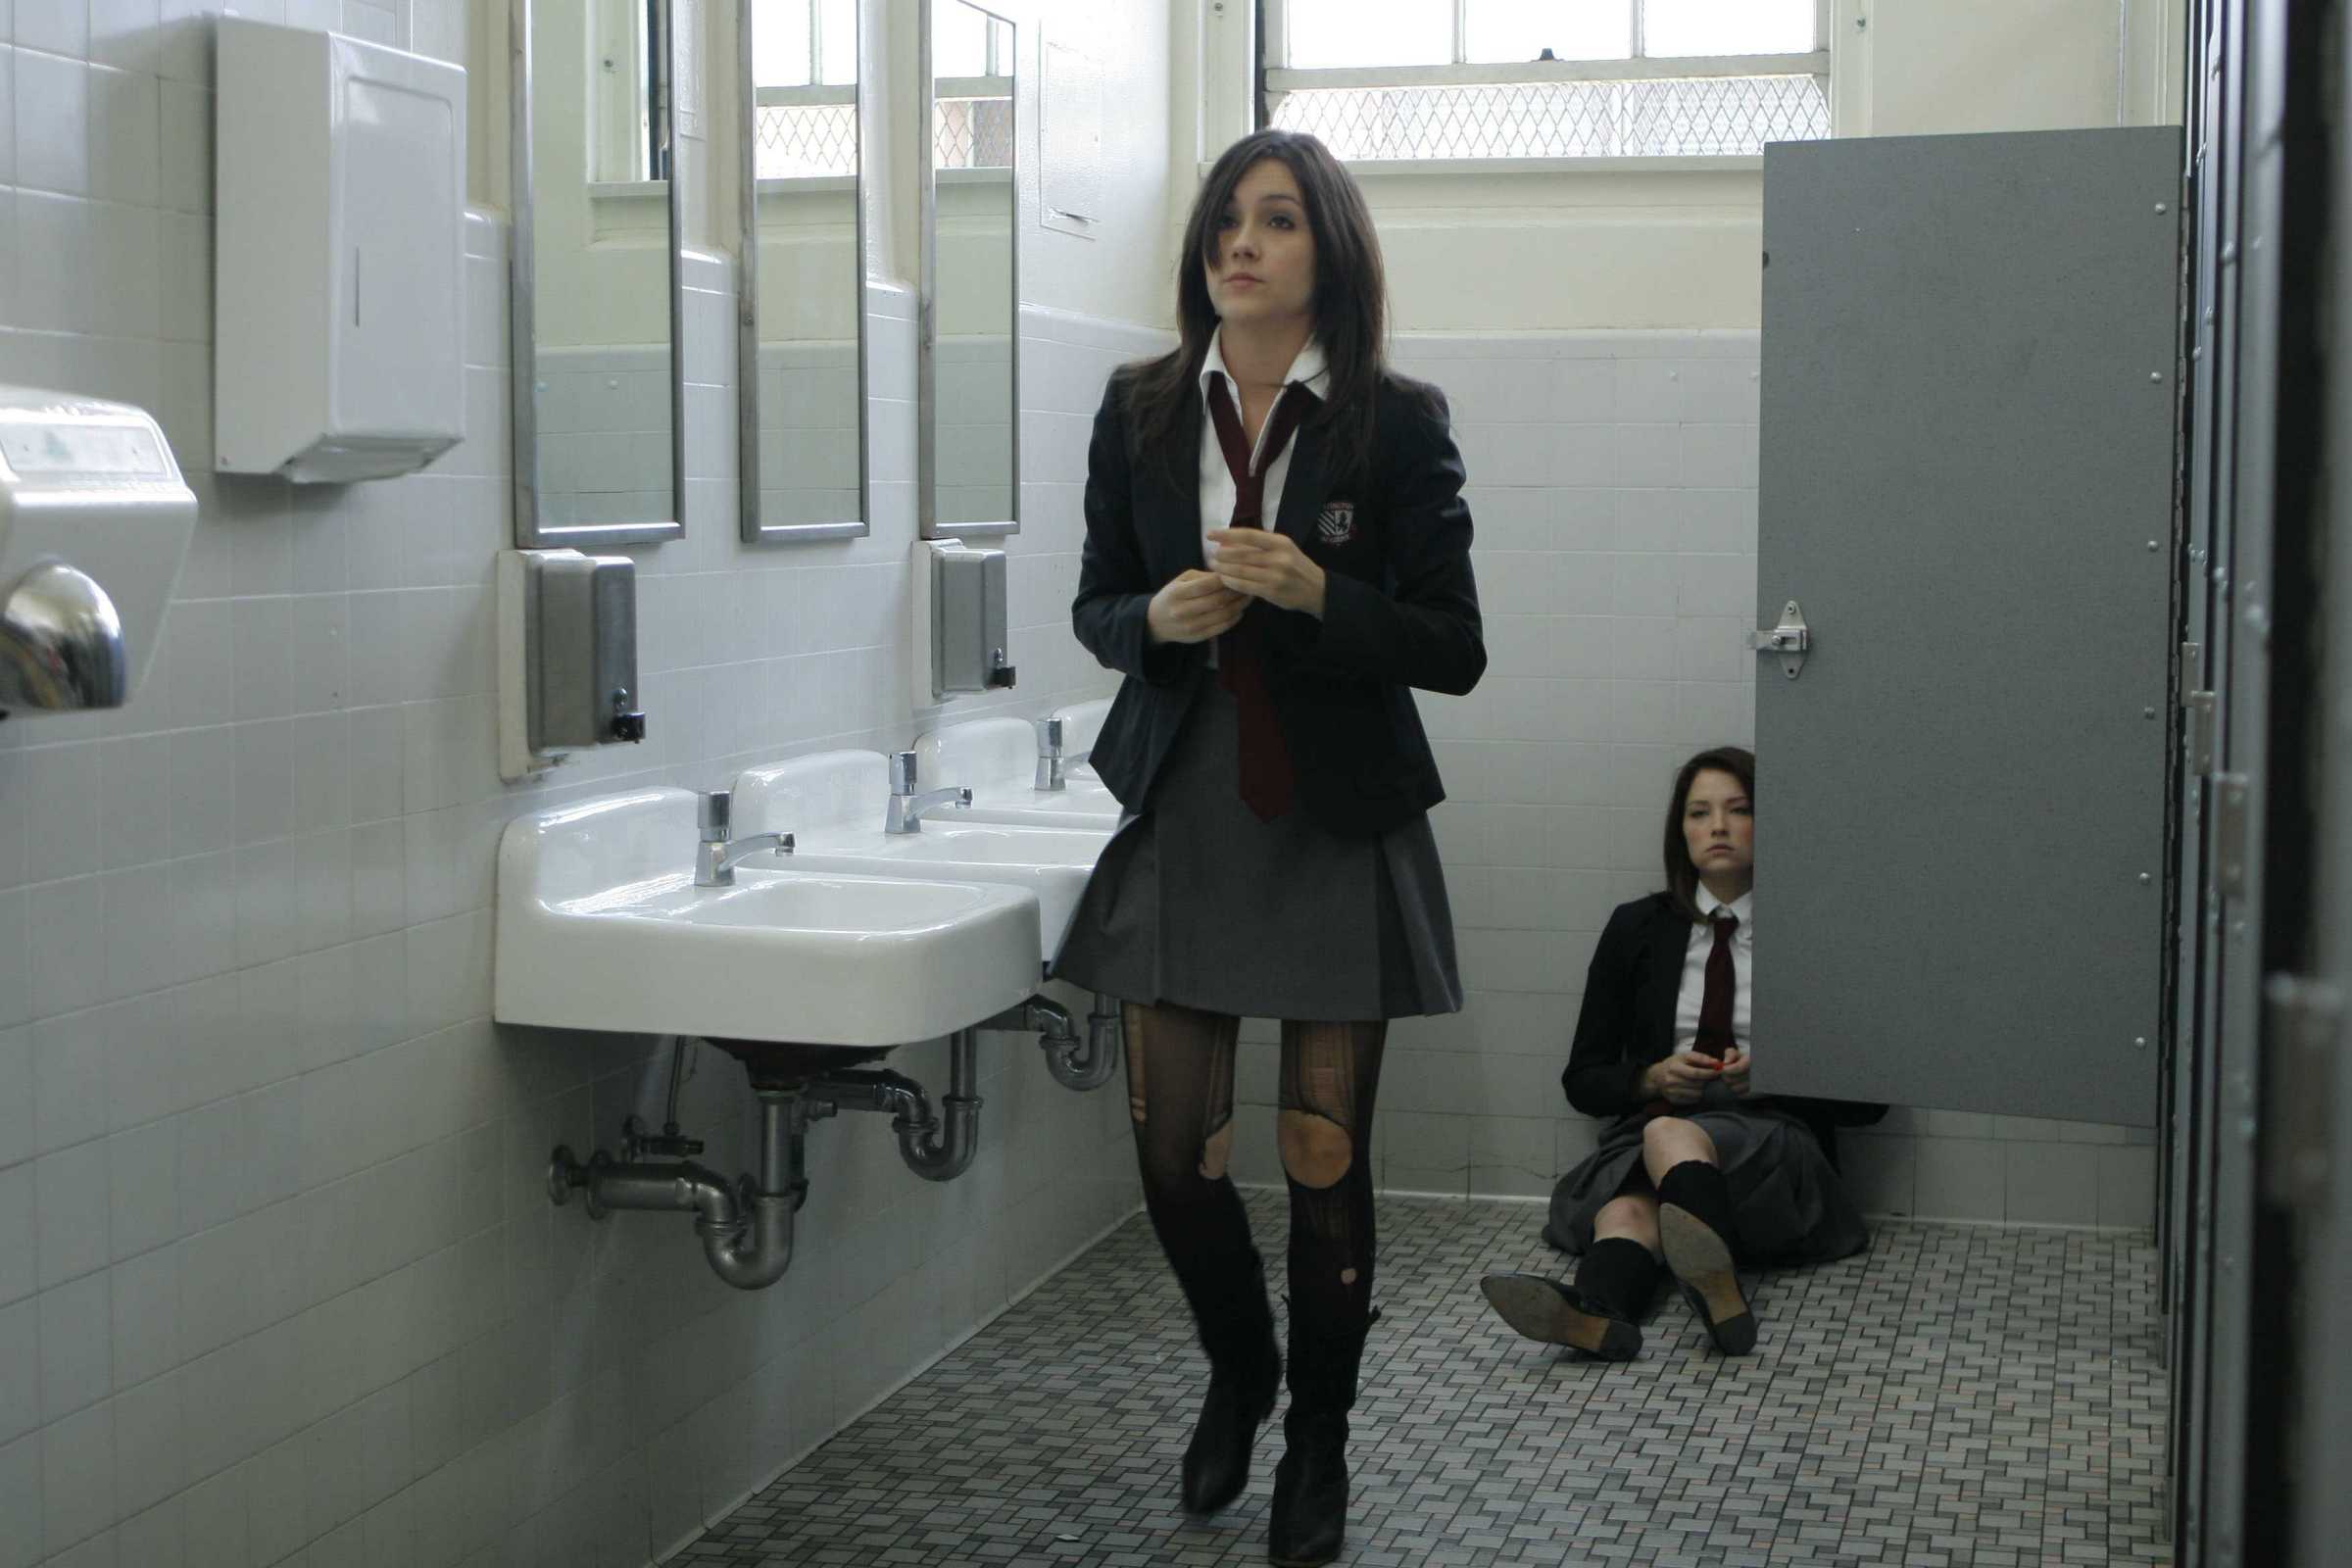 18 в школе в туалете. Призраки Молли хартли (2008). Хейли Беннетт призраки Молли хартли. Шеннон Вудворд.